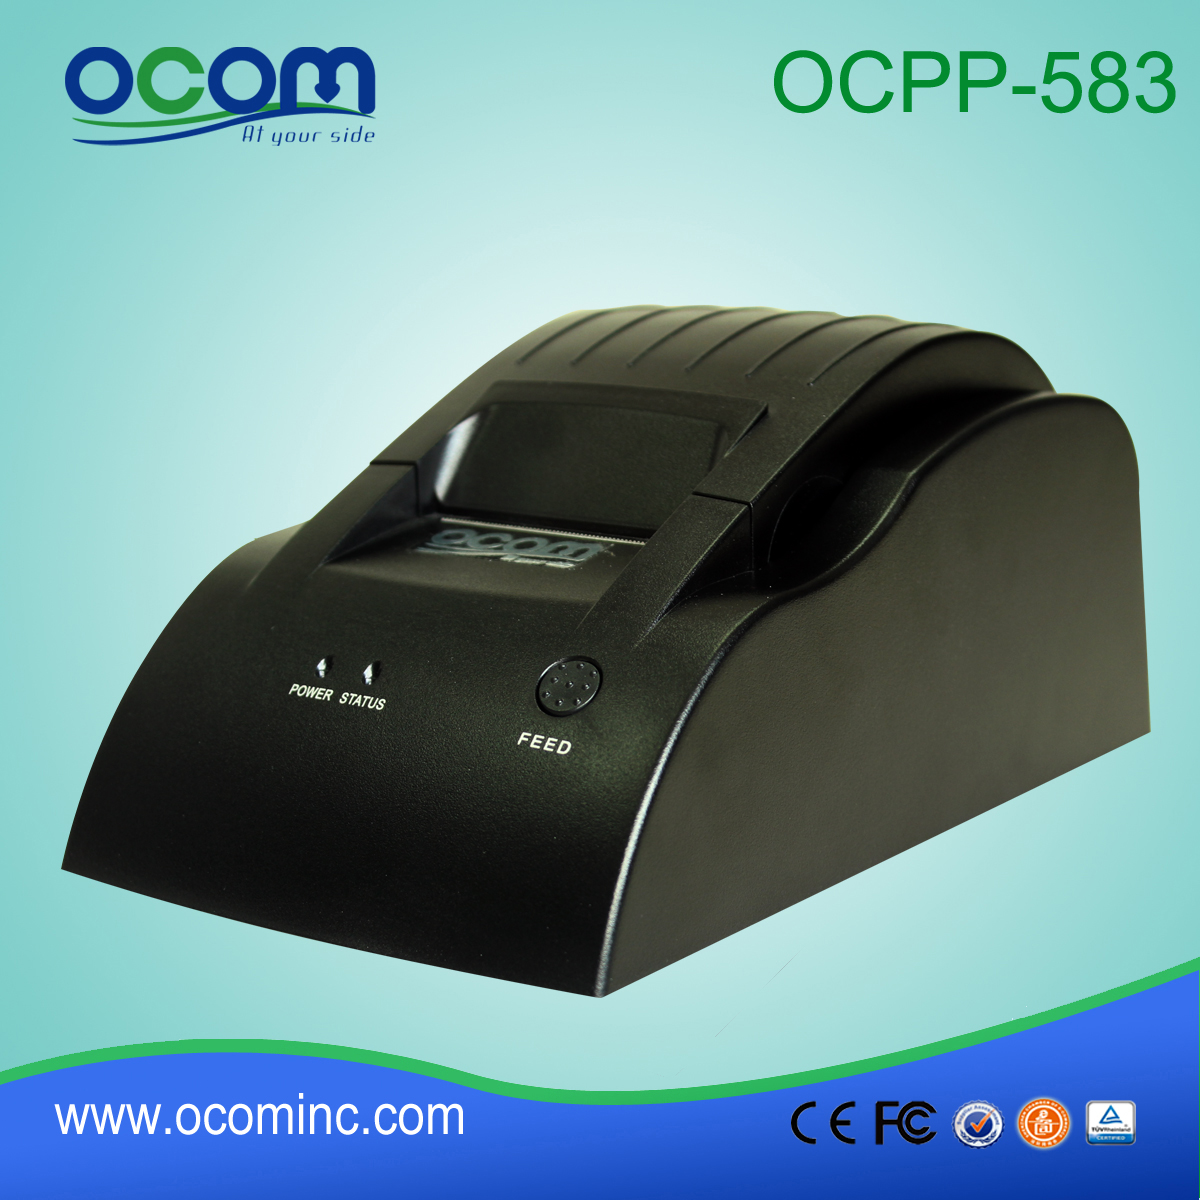 OCPP-583: 2015 zuverlässige Versorgung 58mm Thermo-Belegdrucker, POS-Drucker